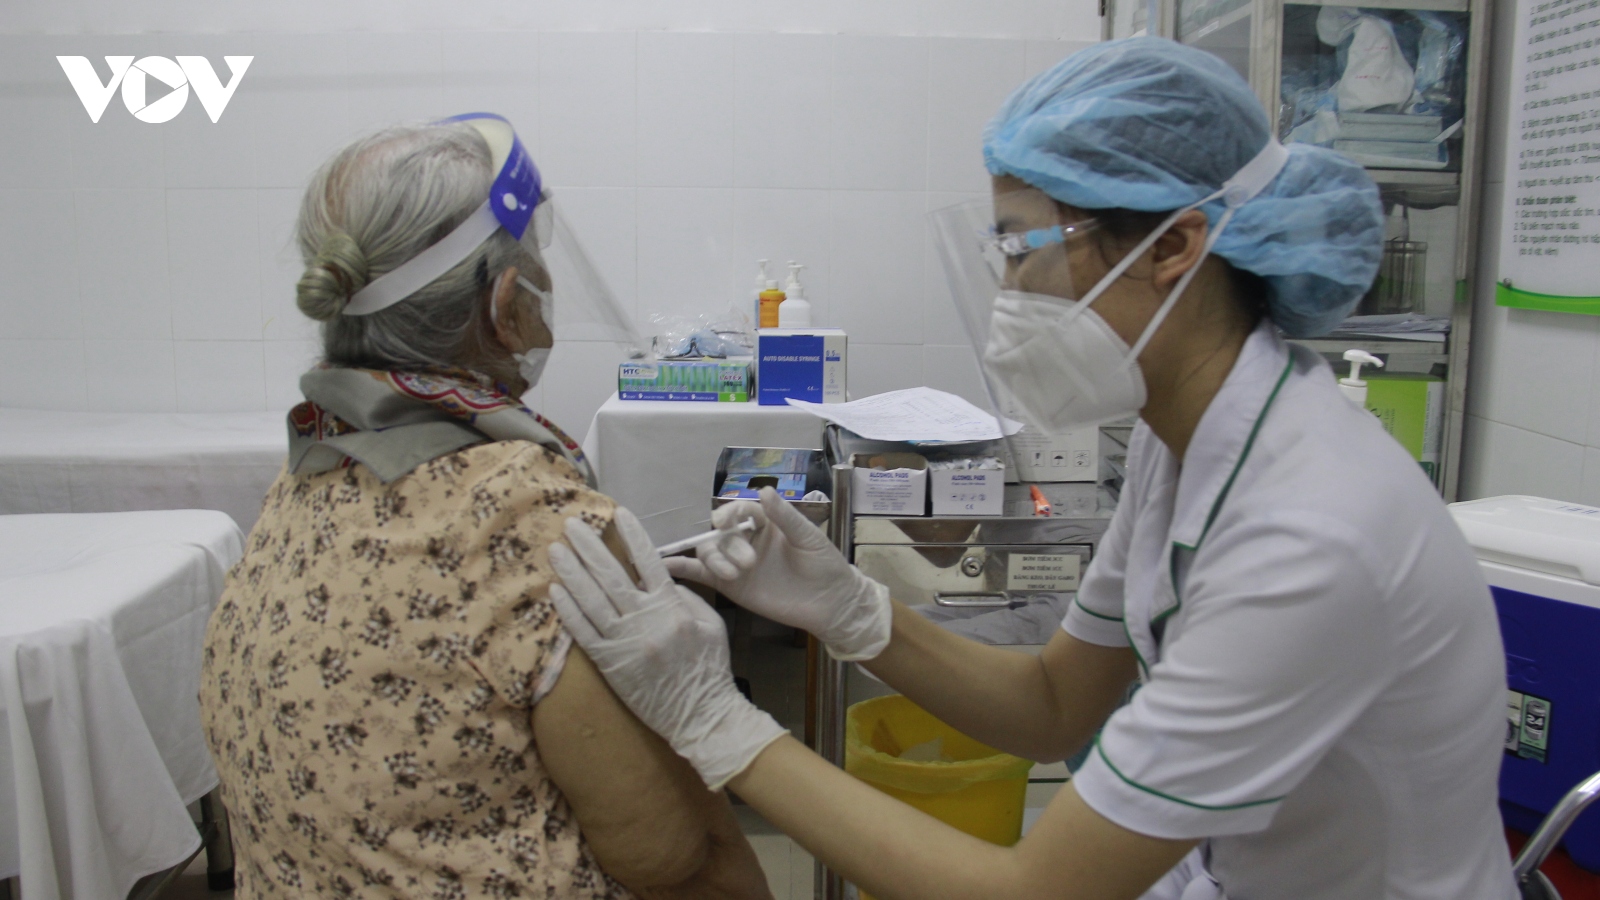 TP.HCM chuẩn bị tiêm vaccine Covid-19 mũi 3 cho người có nguy cơ cao